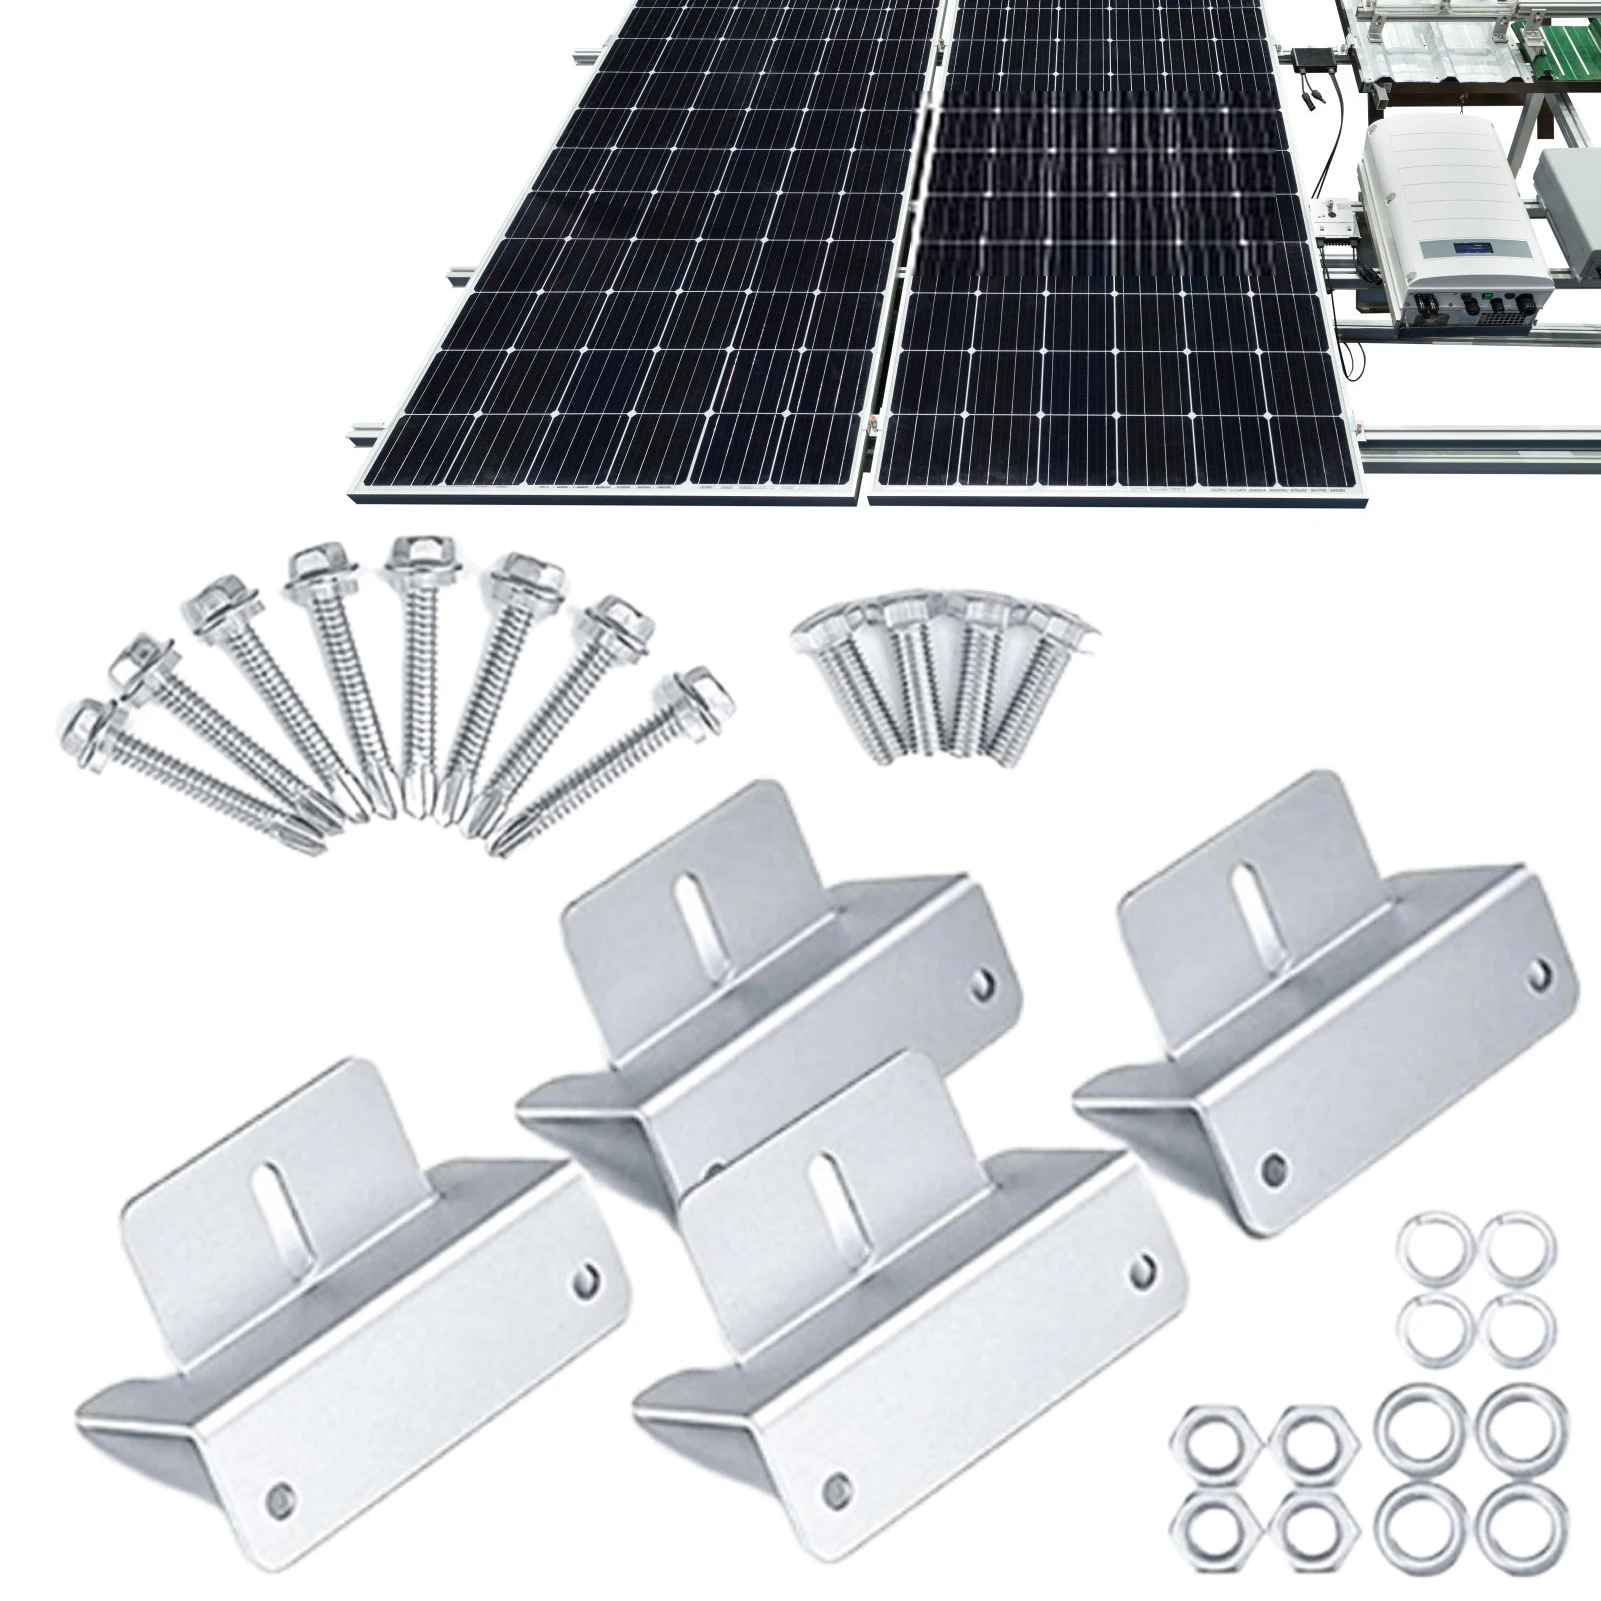 

Кронштейны для солнечных панелей из алюминиевого сплава, крепление для солнечных панелей, 4 шт., крепежный кронштейн для солнечных панелей, ...